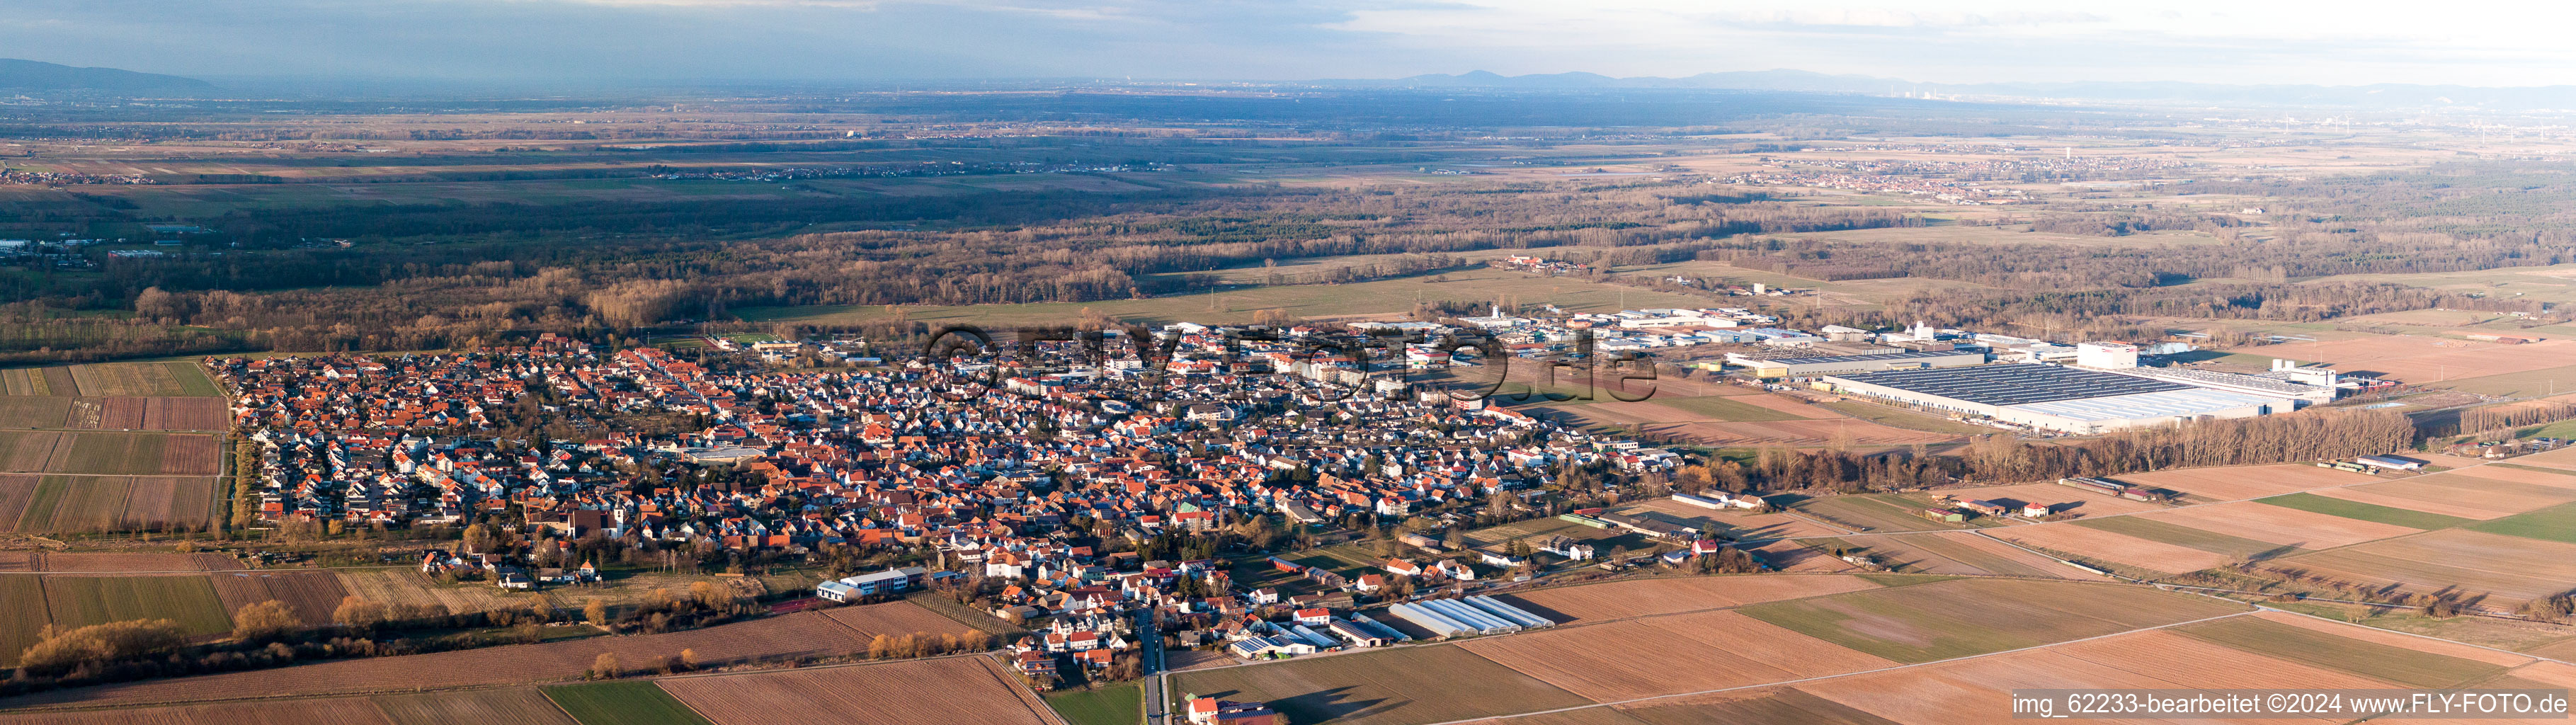 Vue aérienne de Panorama - vue en perspective des rues et des maisons des quartiers résidentiels à Offenbach an der Queich dans le département Rhénanie-Palatinat, Allemagne